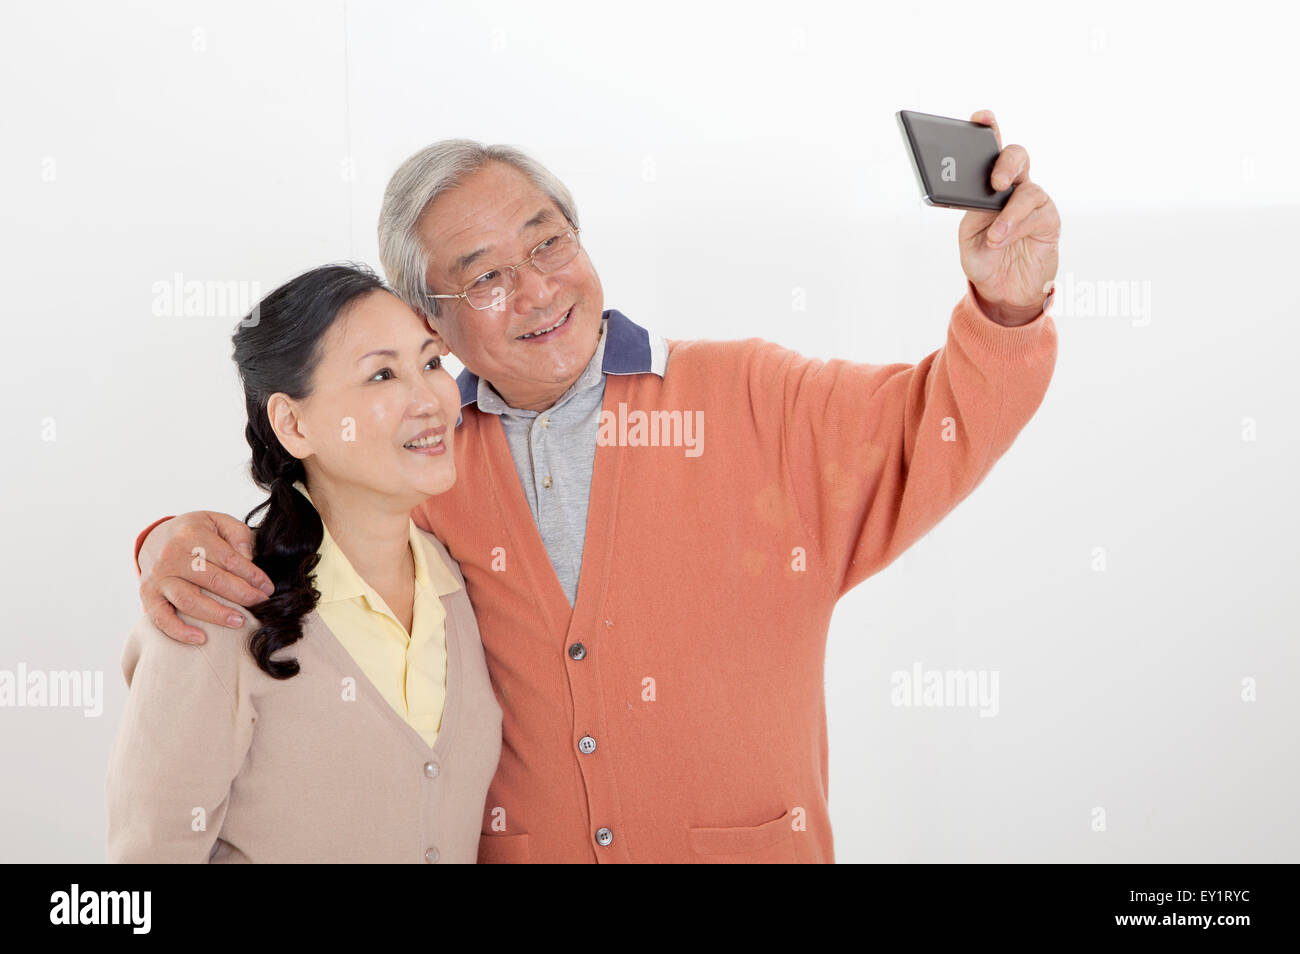 A Senior couple le téléphone mobile et heureusement, smiling Banque D'Images